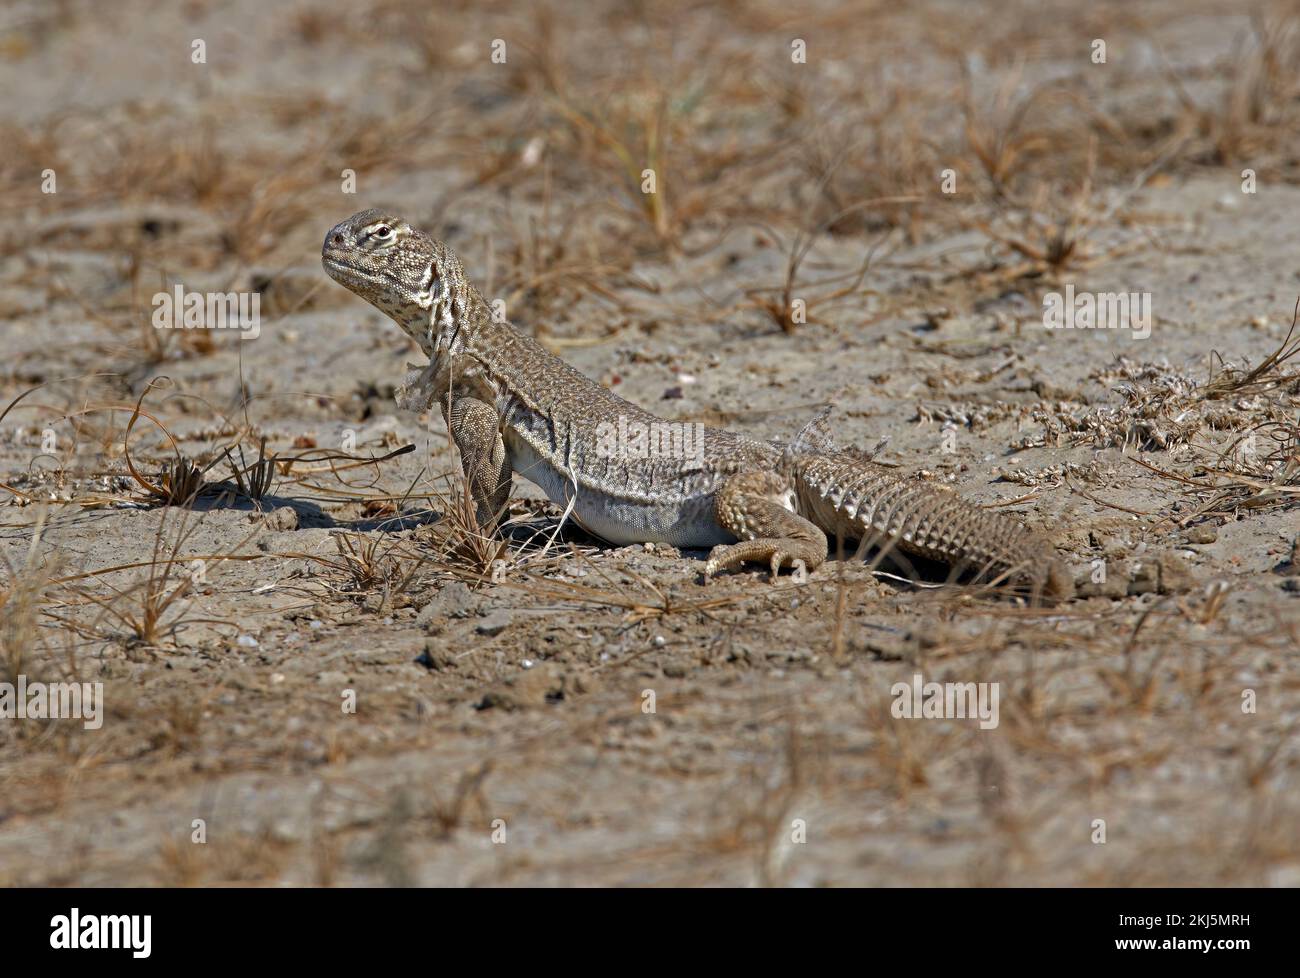 Lagarto de cola espinosa (Uromastyx hardwickii) adulto en la llanura arenosa de Gujarat, India Noviembre Foto de stock